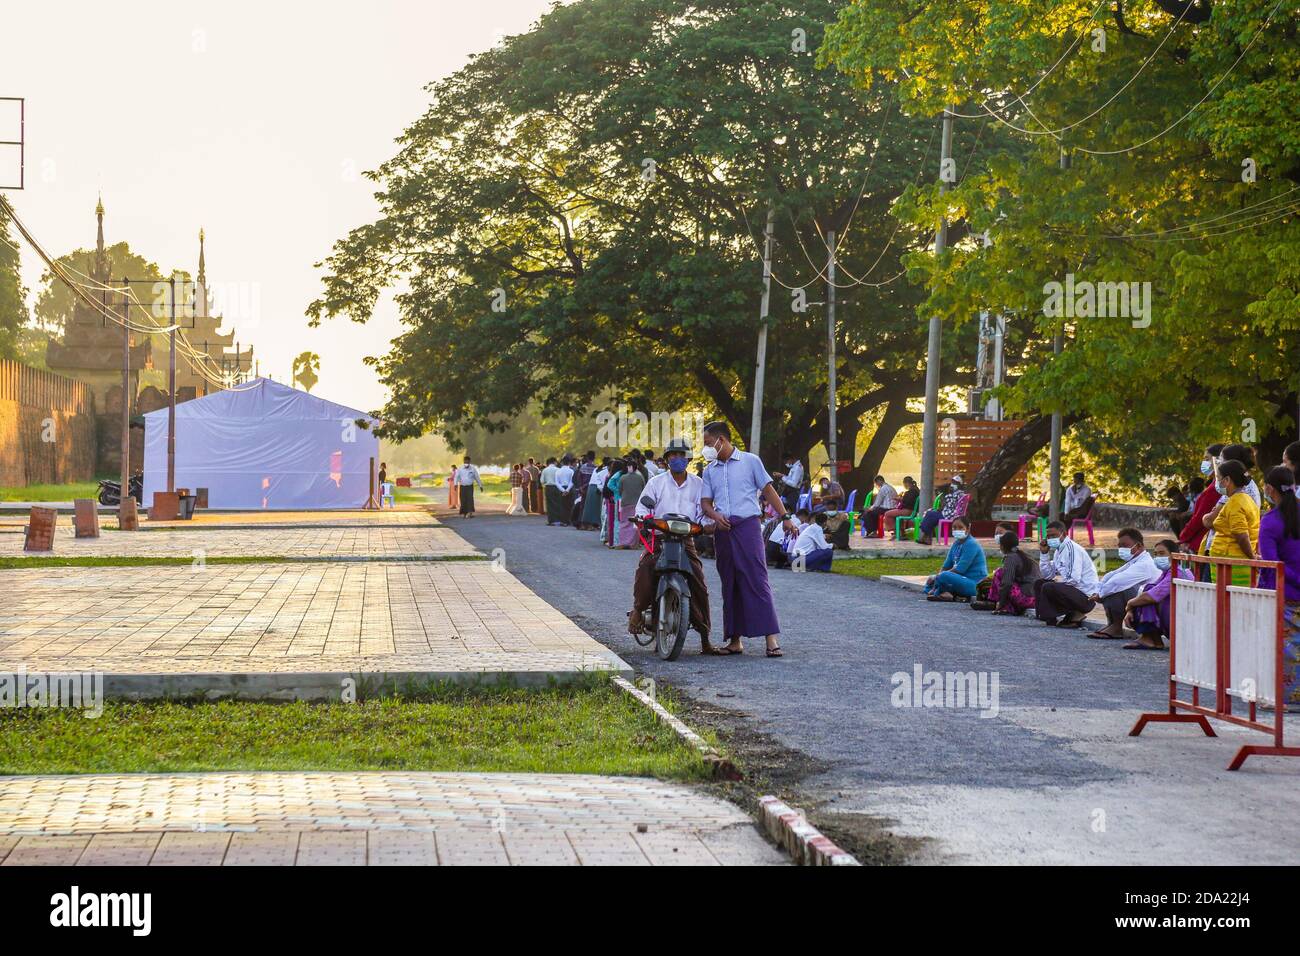 Les membres de la famille militaire portant des masques faciaux attendent devant le bureau de vote militaire pour voter.les citoyens du Myanmar ont voté lors de la deuxième élection démocratique depuis la fin du régime militaire, la Ligue nationale pour la démocratie (NLD) Aung San Suu Kyi devant remporter l'élection. Banque D'Images